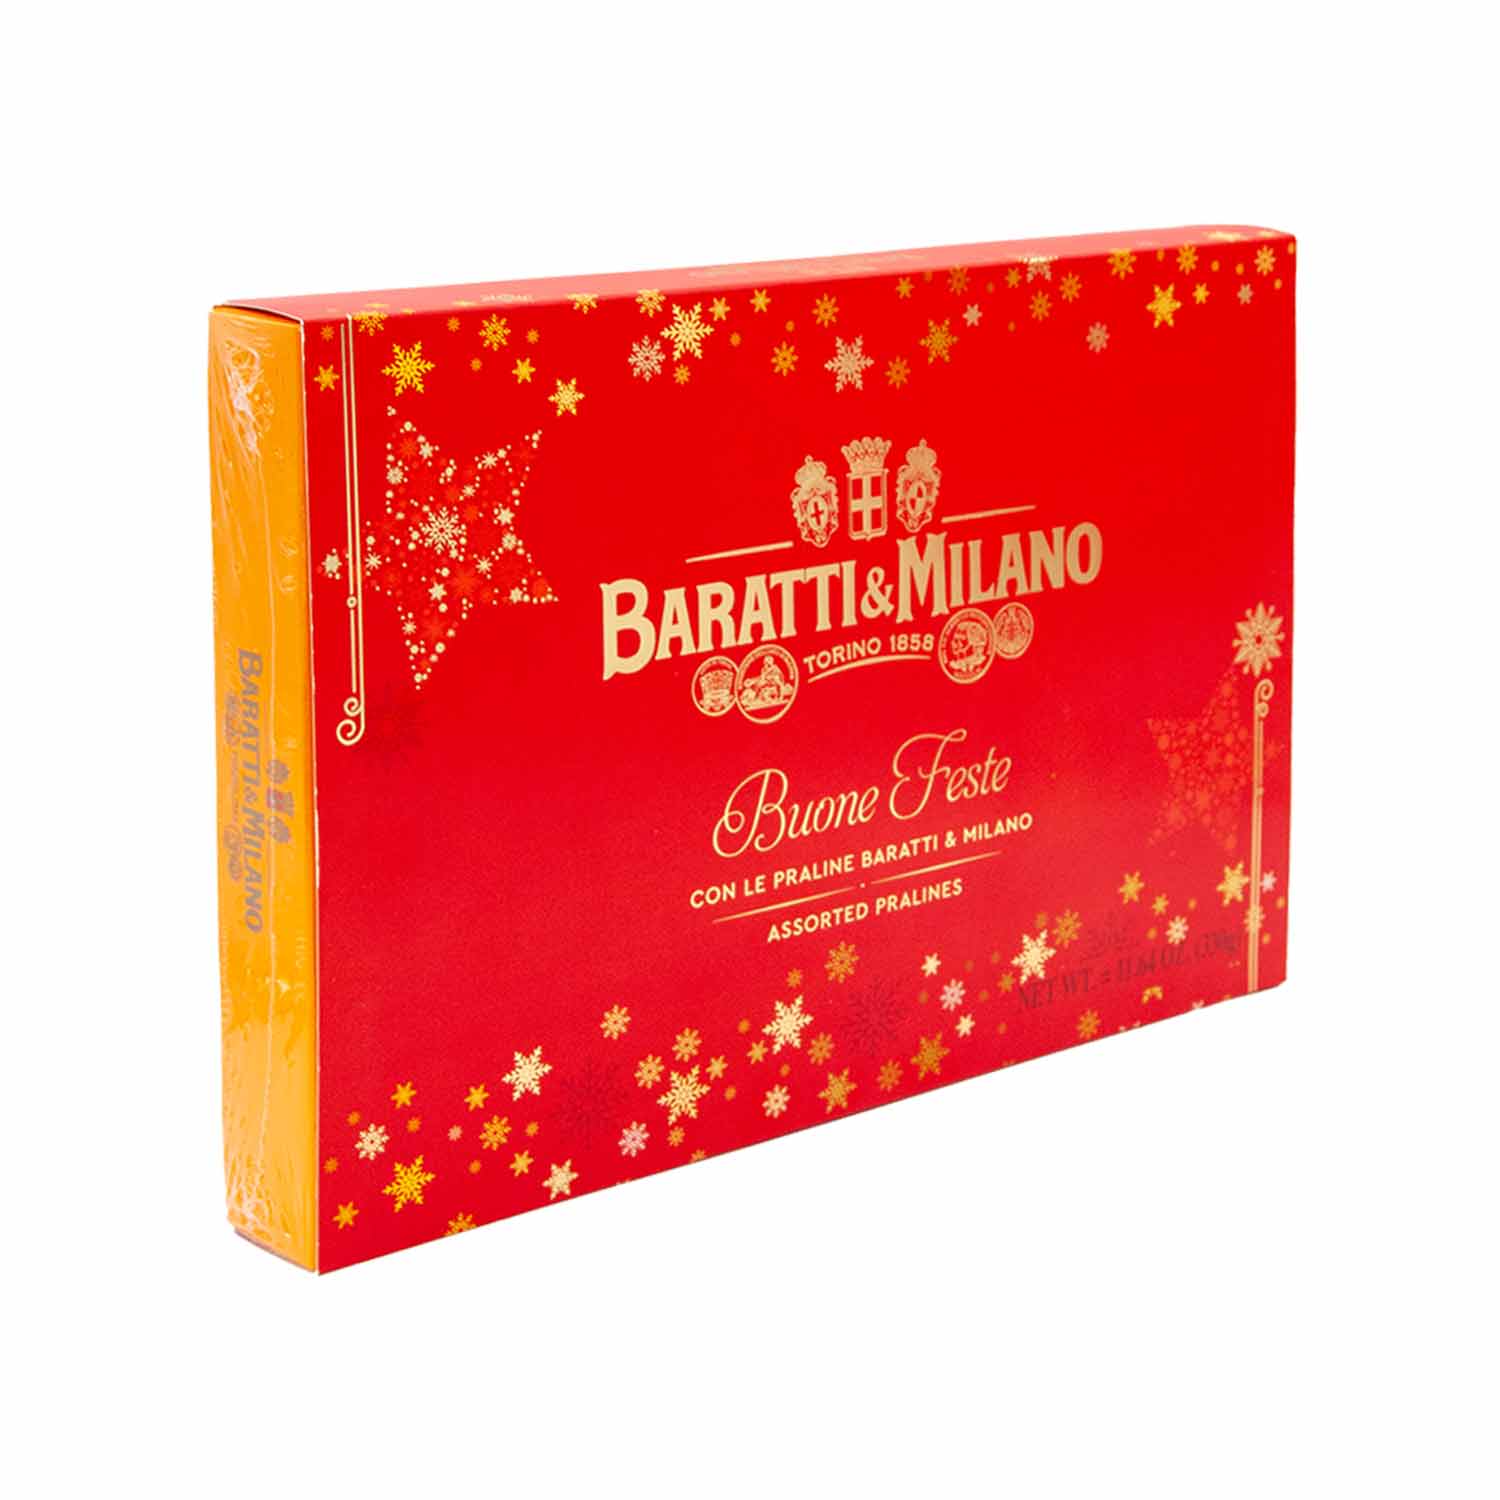 Baratti & Milano Weihnachtsgeschenkbox mit Auswahl an italienischen Pralinen, 330g